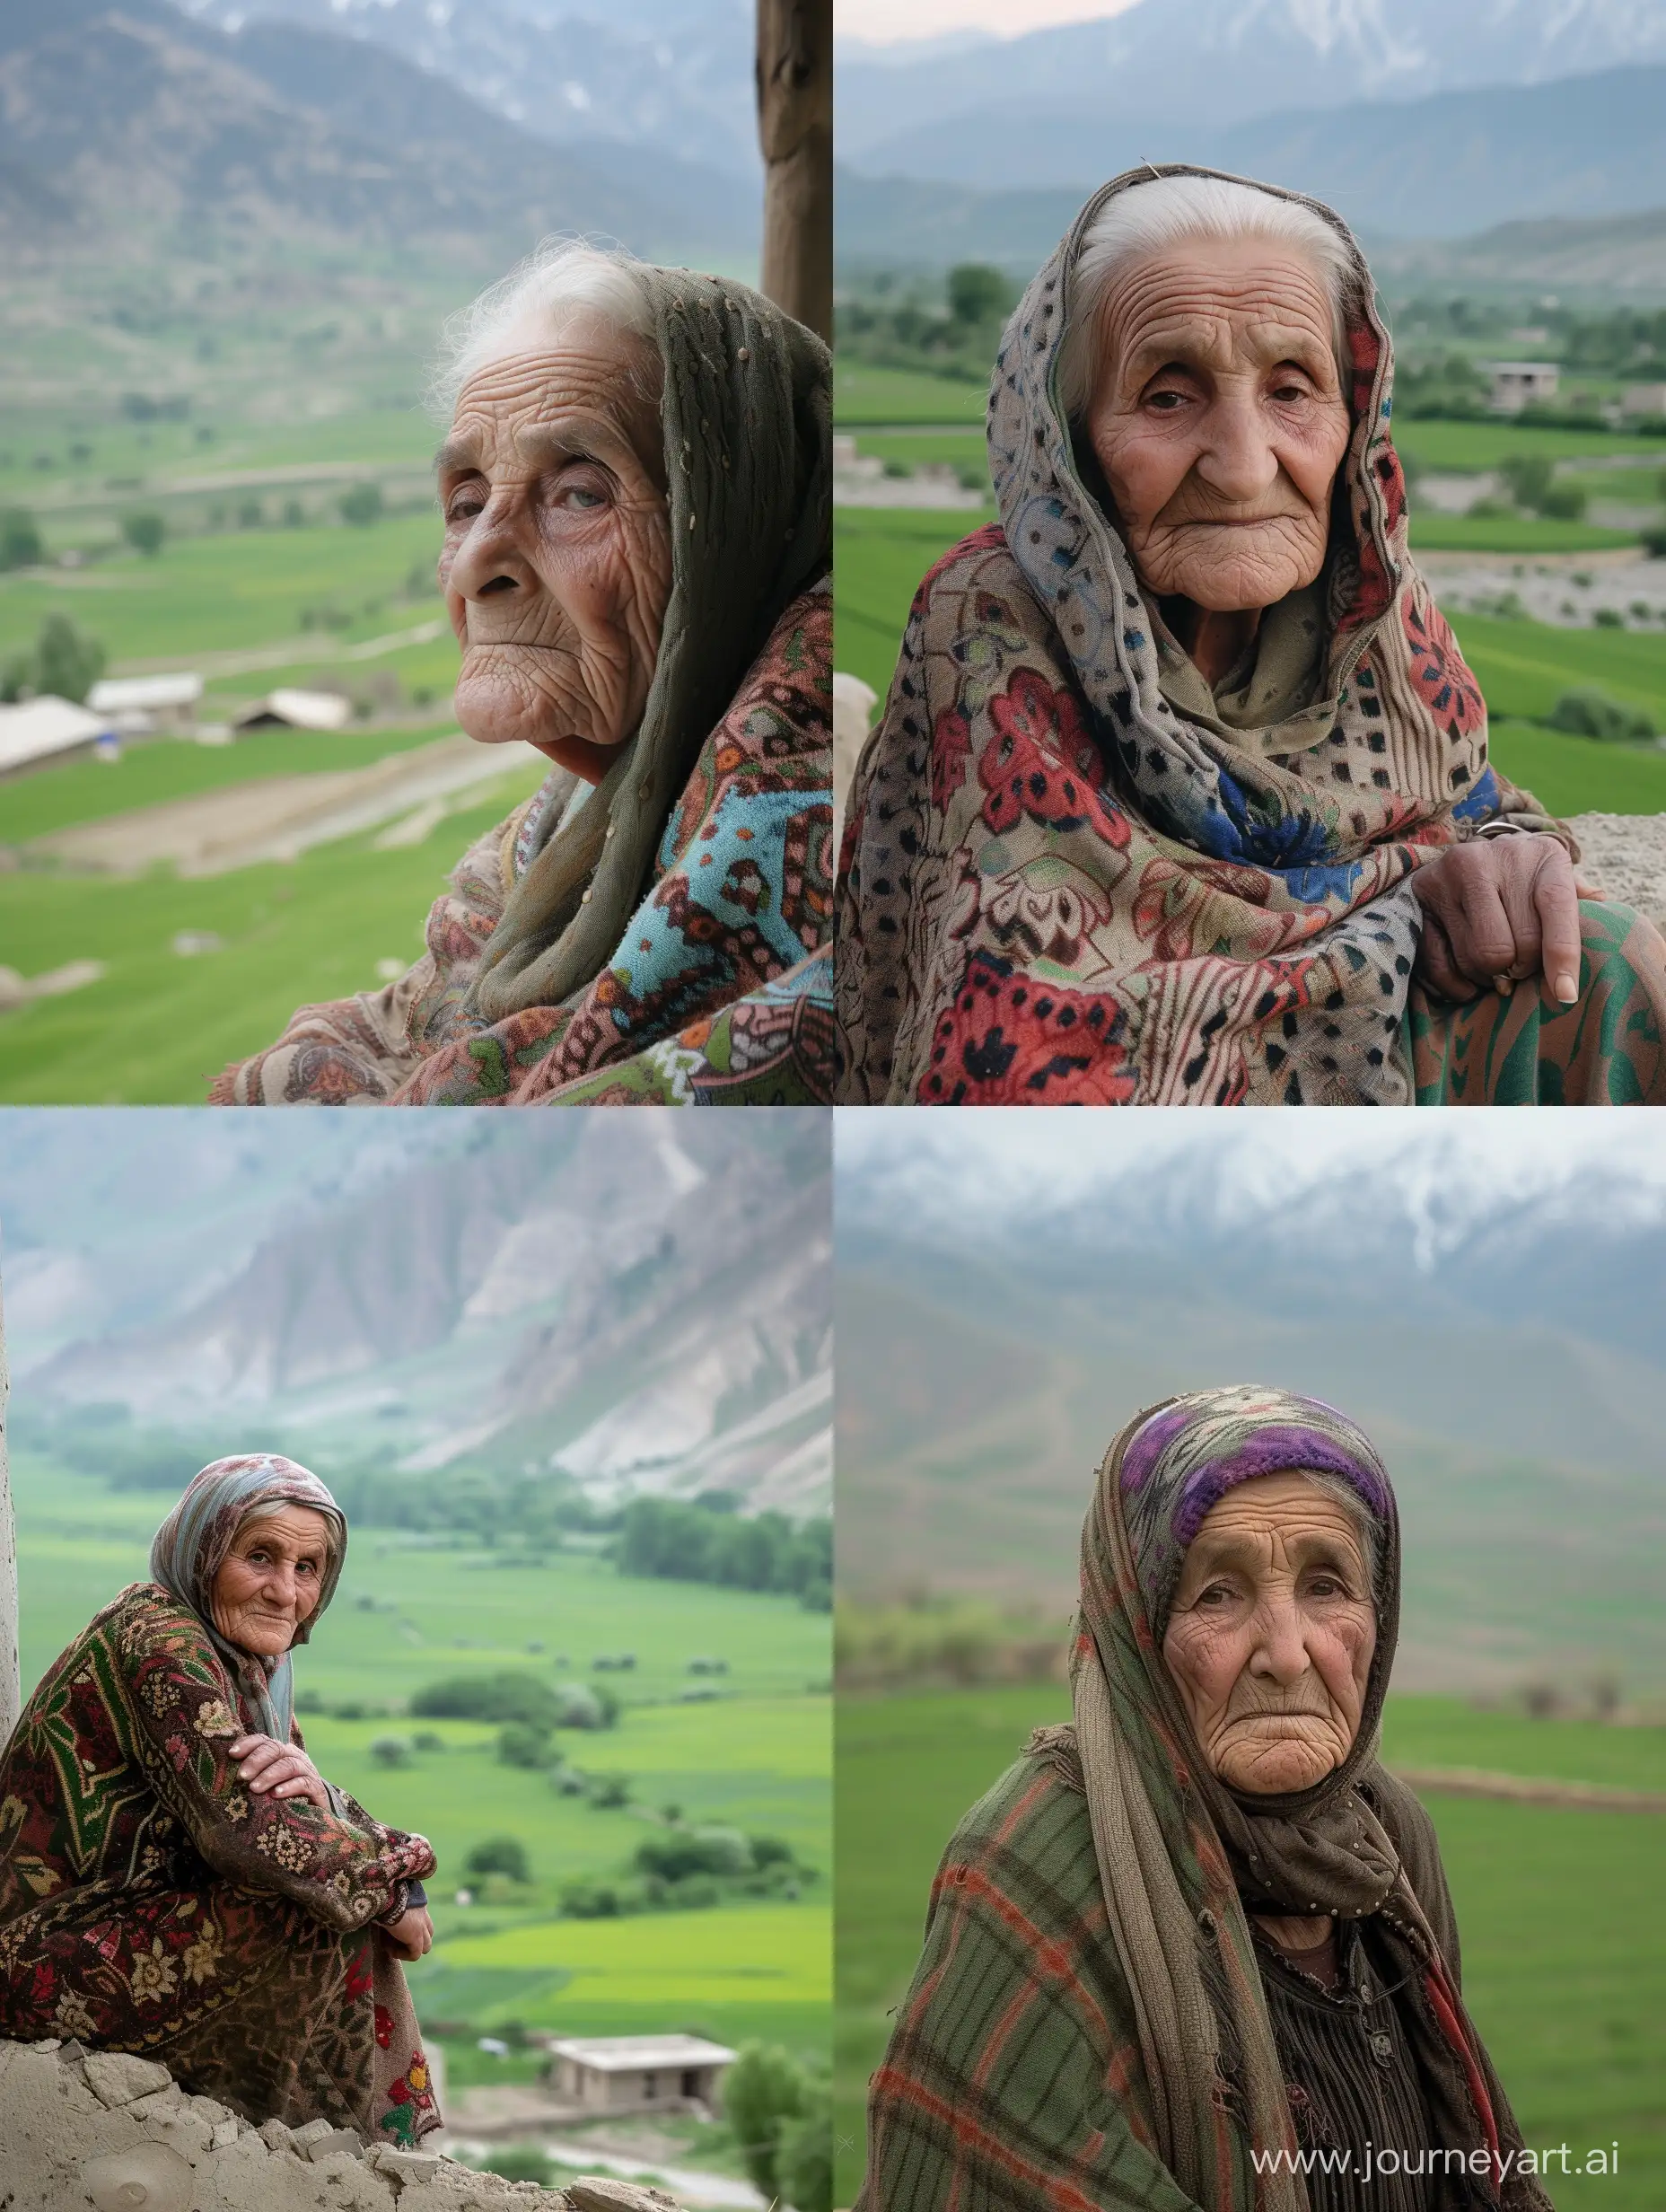 في إحدى القرى الصغيرة، عاشت عجوز تدعى فاطمة، وكانت قد وصلت إلى عمر الثمانين عامًا. كانت فاطمة امرأة طيبة القلب وذات روح حنونة. كانت تعيش بمفردها في منزل صغير يطل على حقول خضراء وجبال
